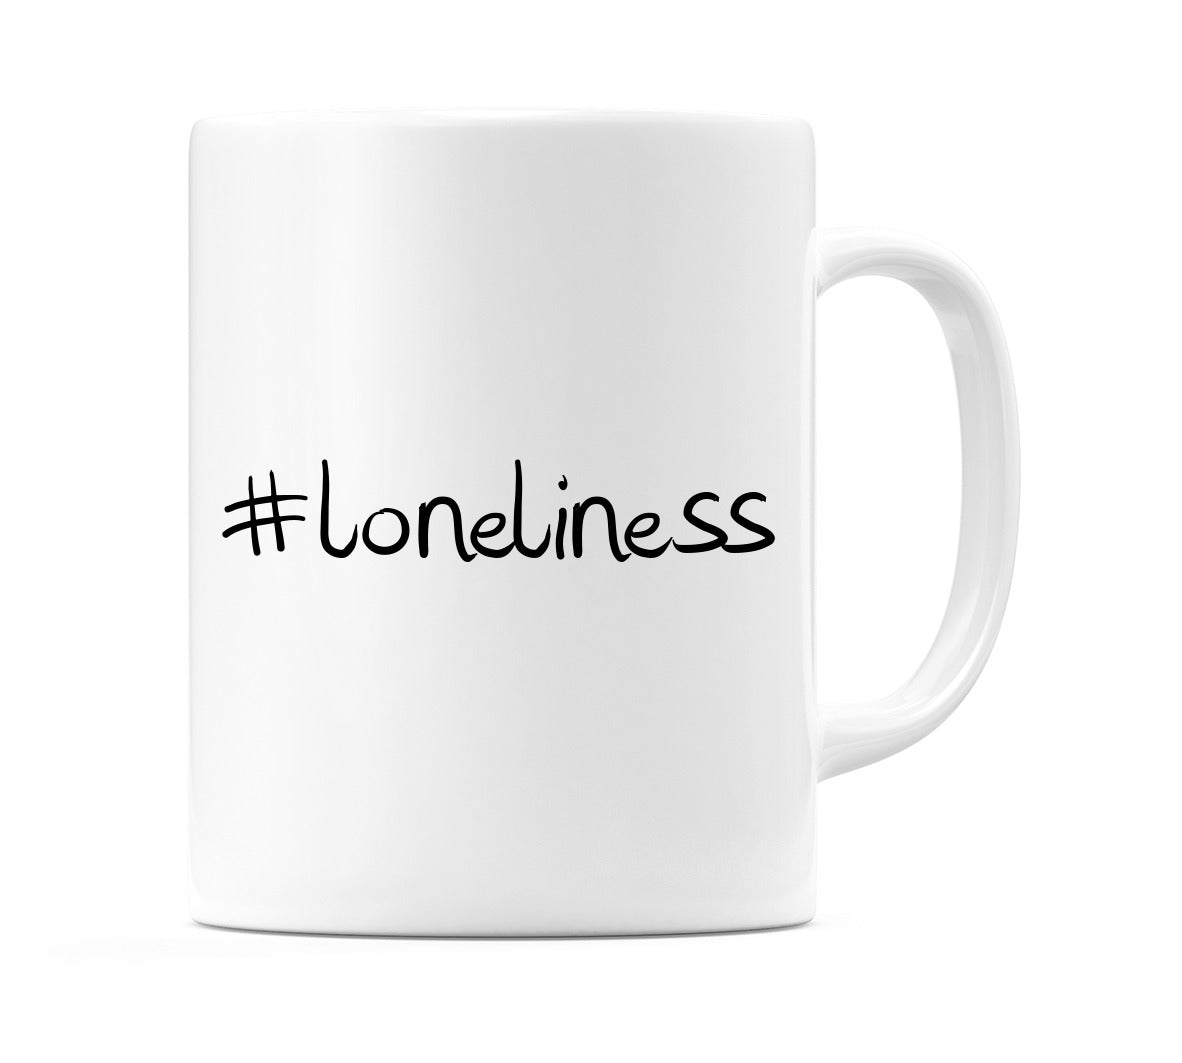 #loneliness Mug